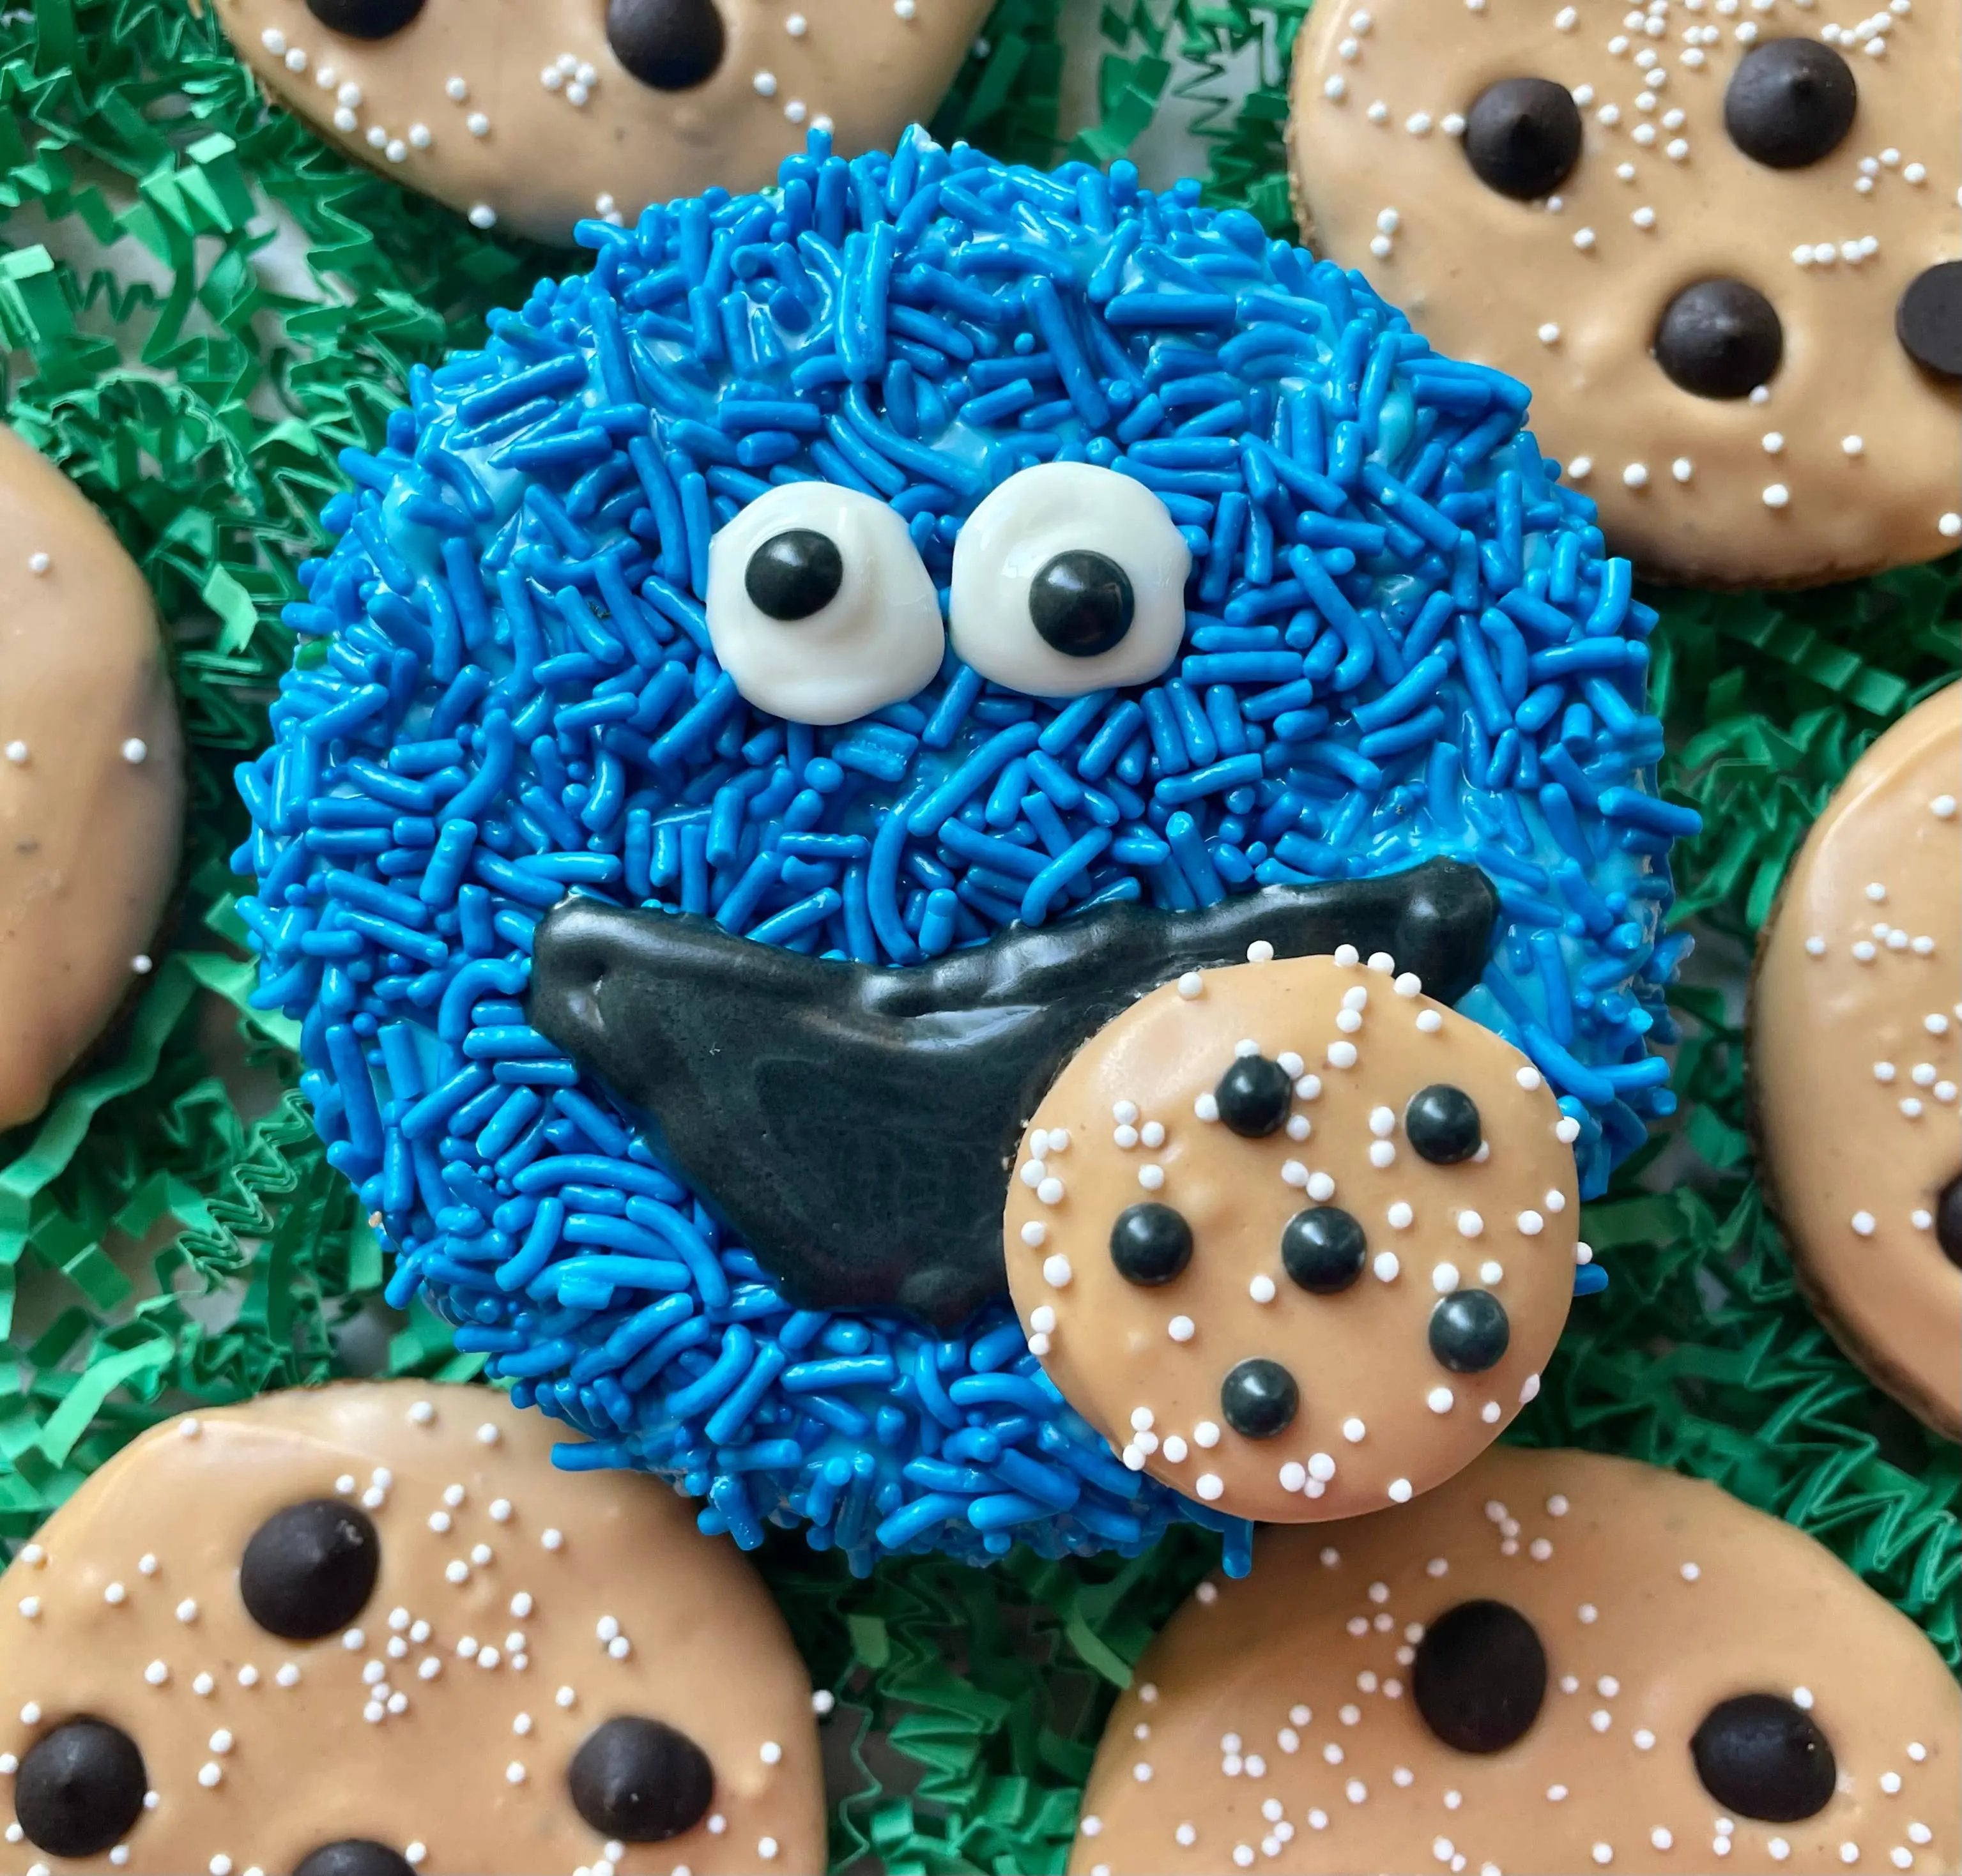 YumYum4DOGS - Cookie Monster Cake dog treats